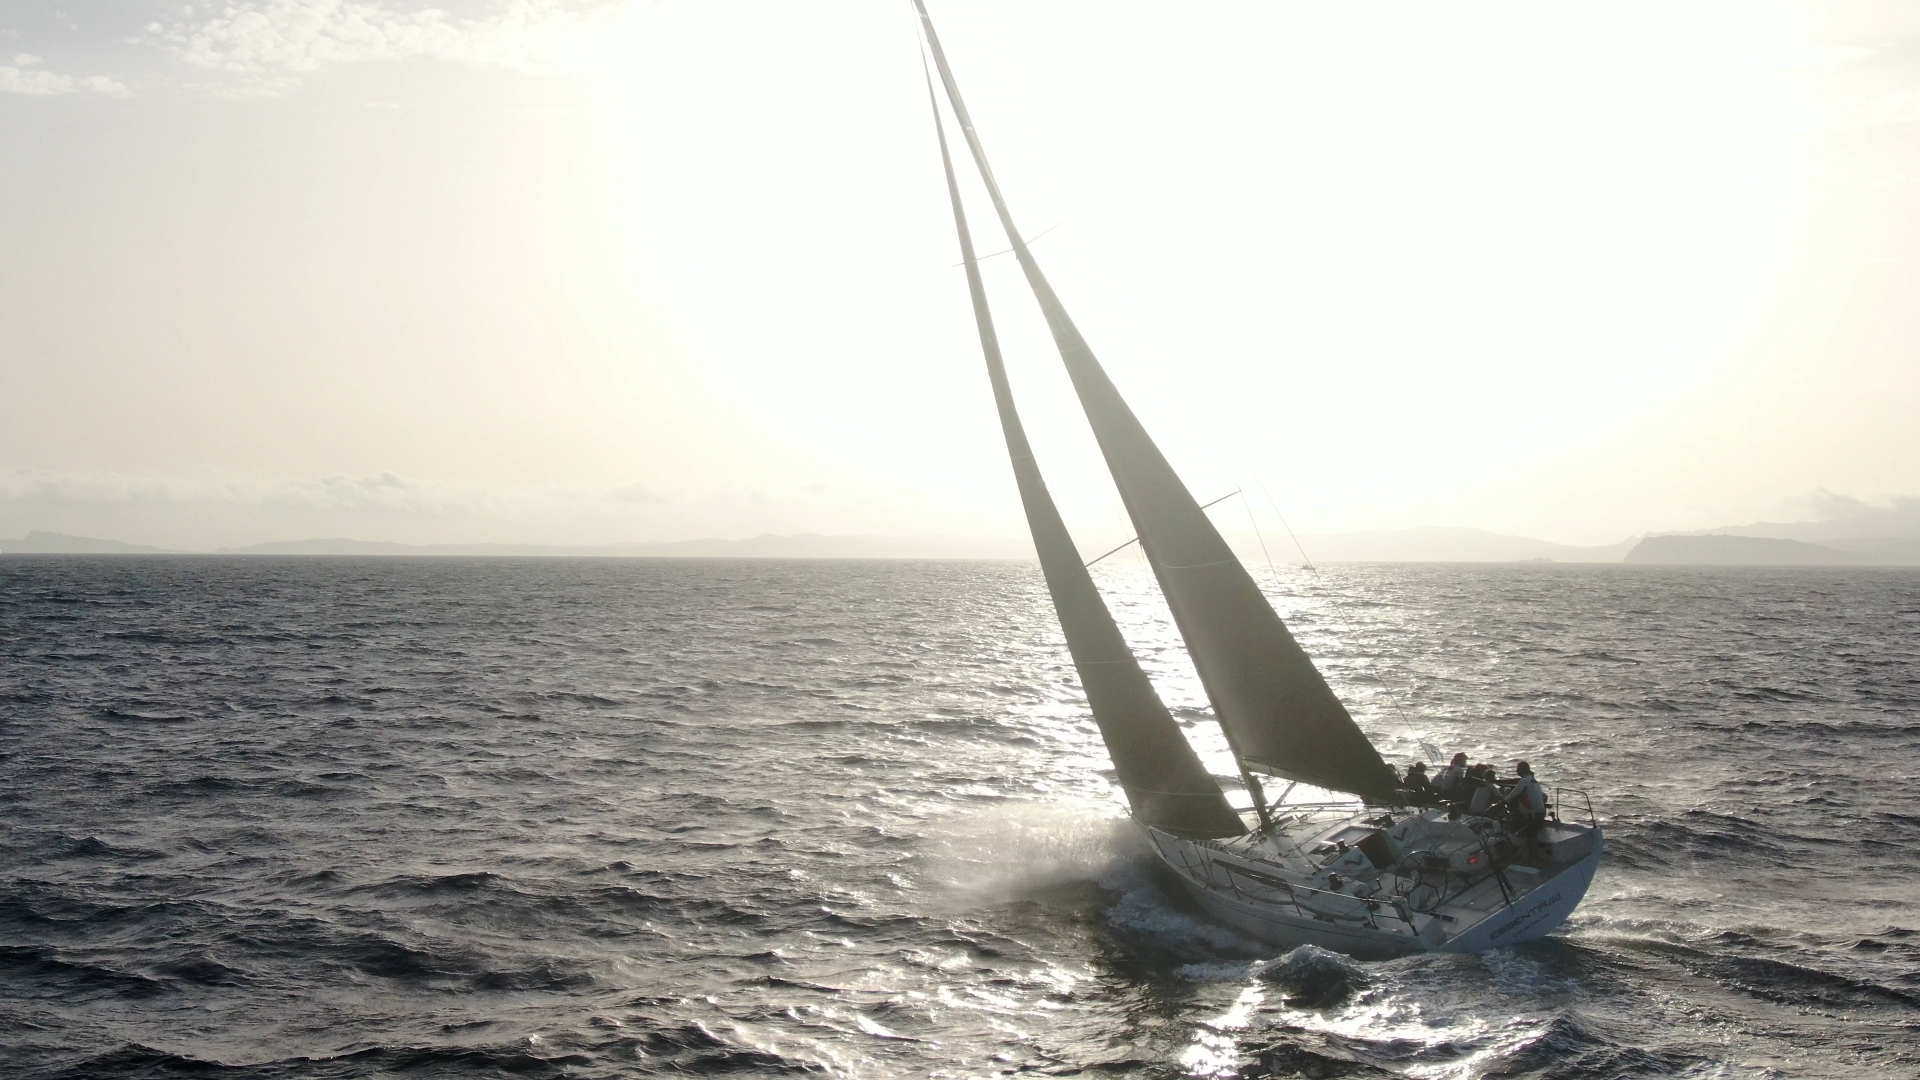 Campionato Mondiale ORC di vela d’altura, conclusa la prova offshore - Comunicati Stampa - Yacht Club Costa Smeralda